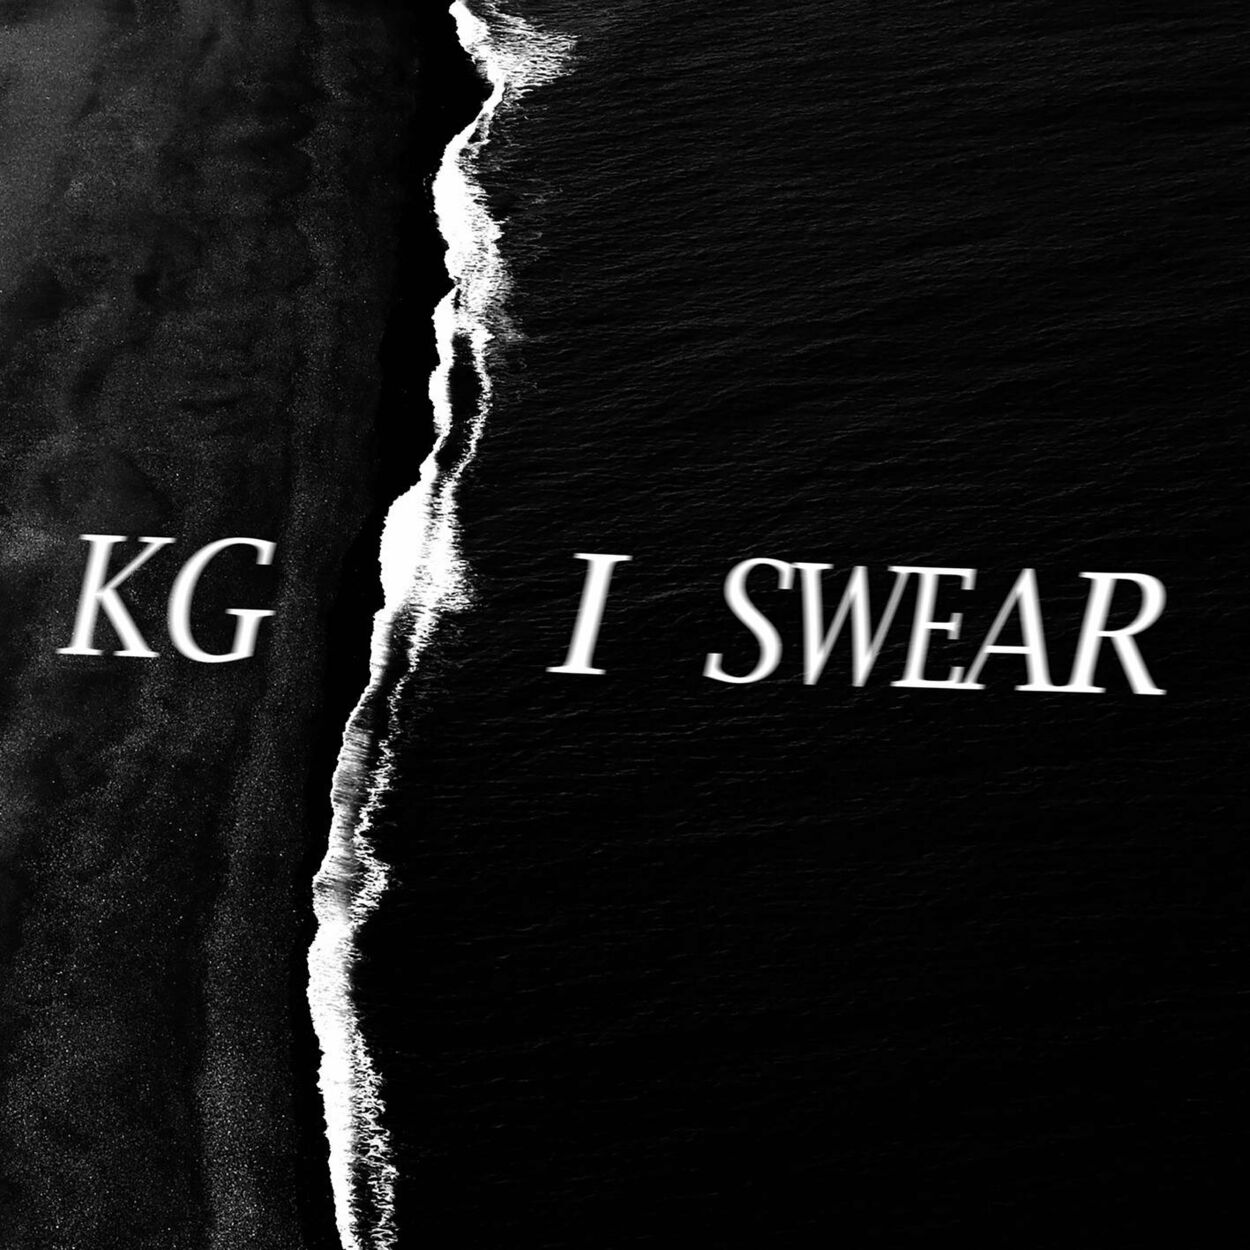 KG – I Swear – Single